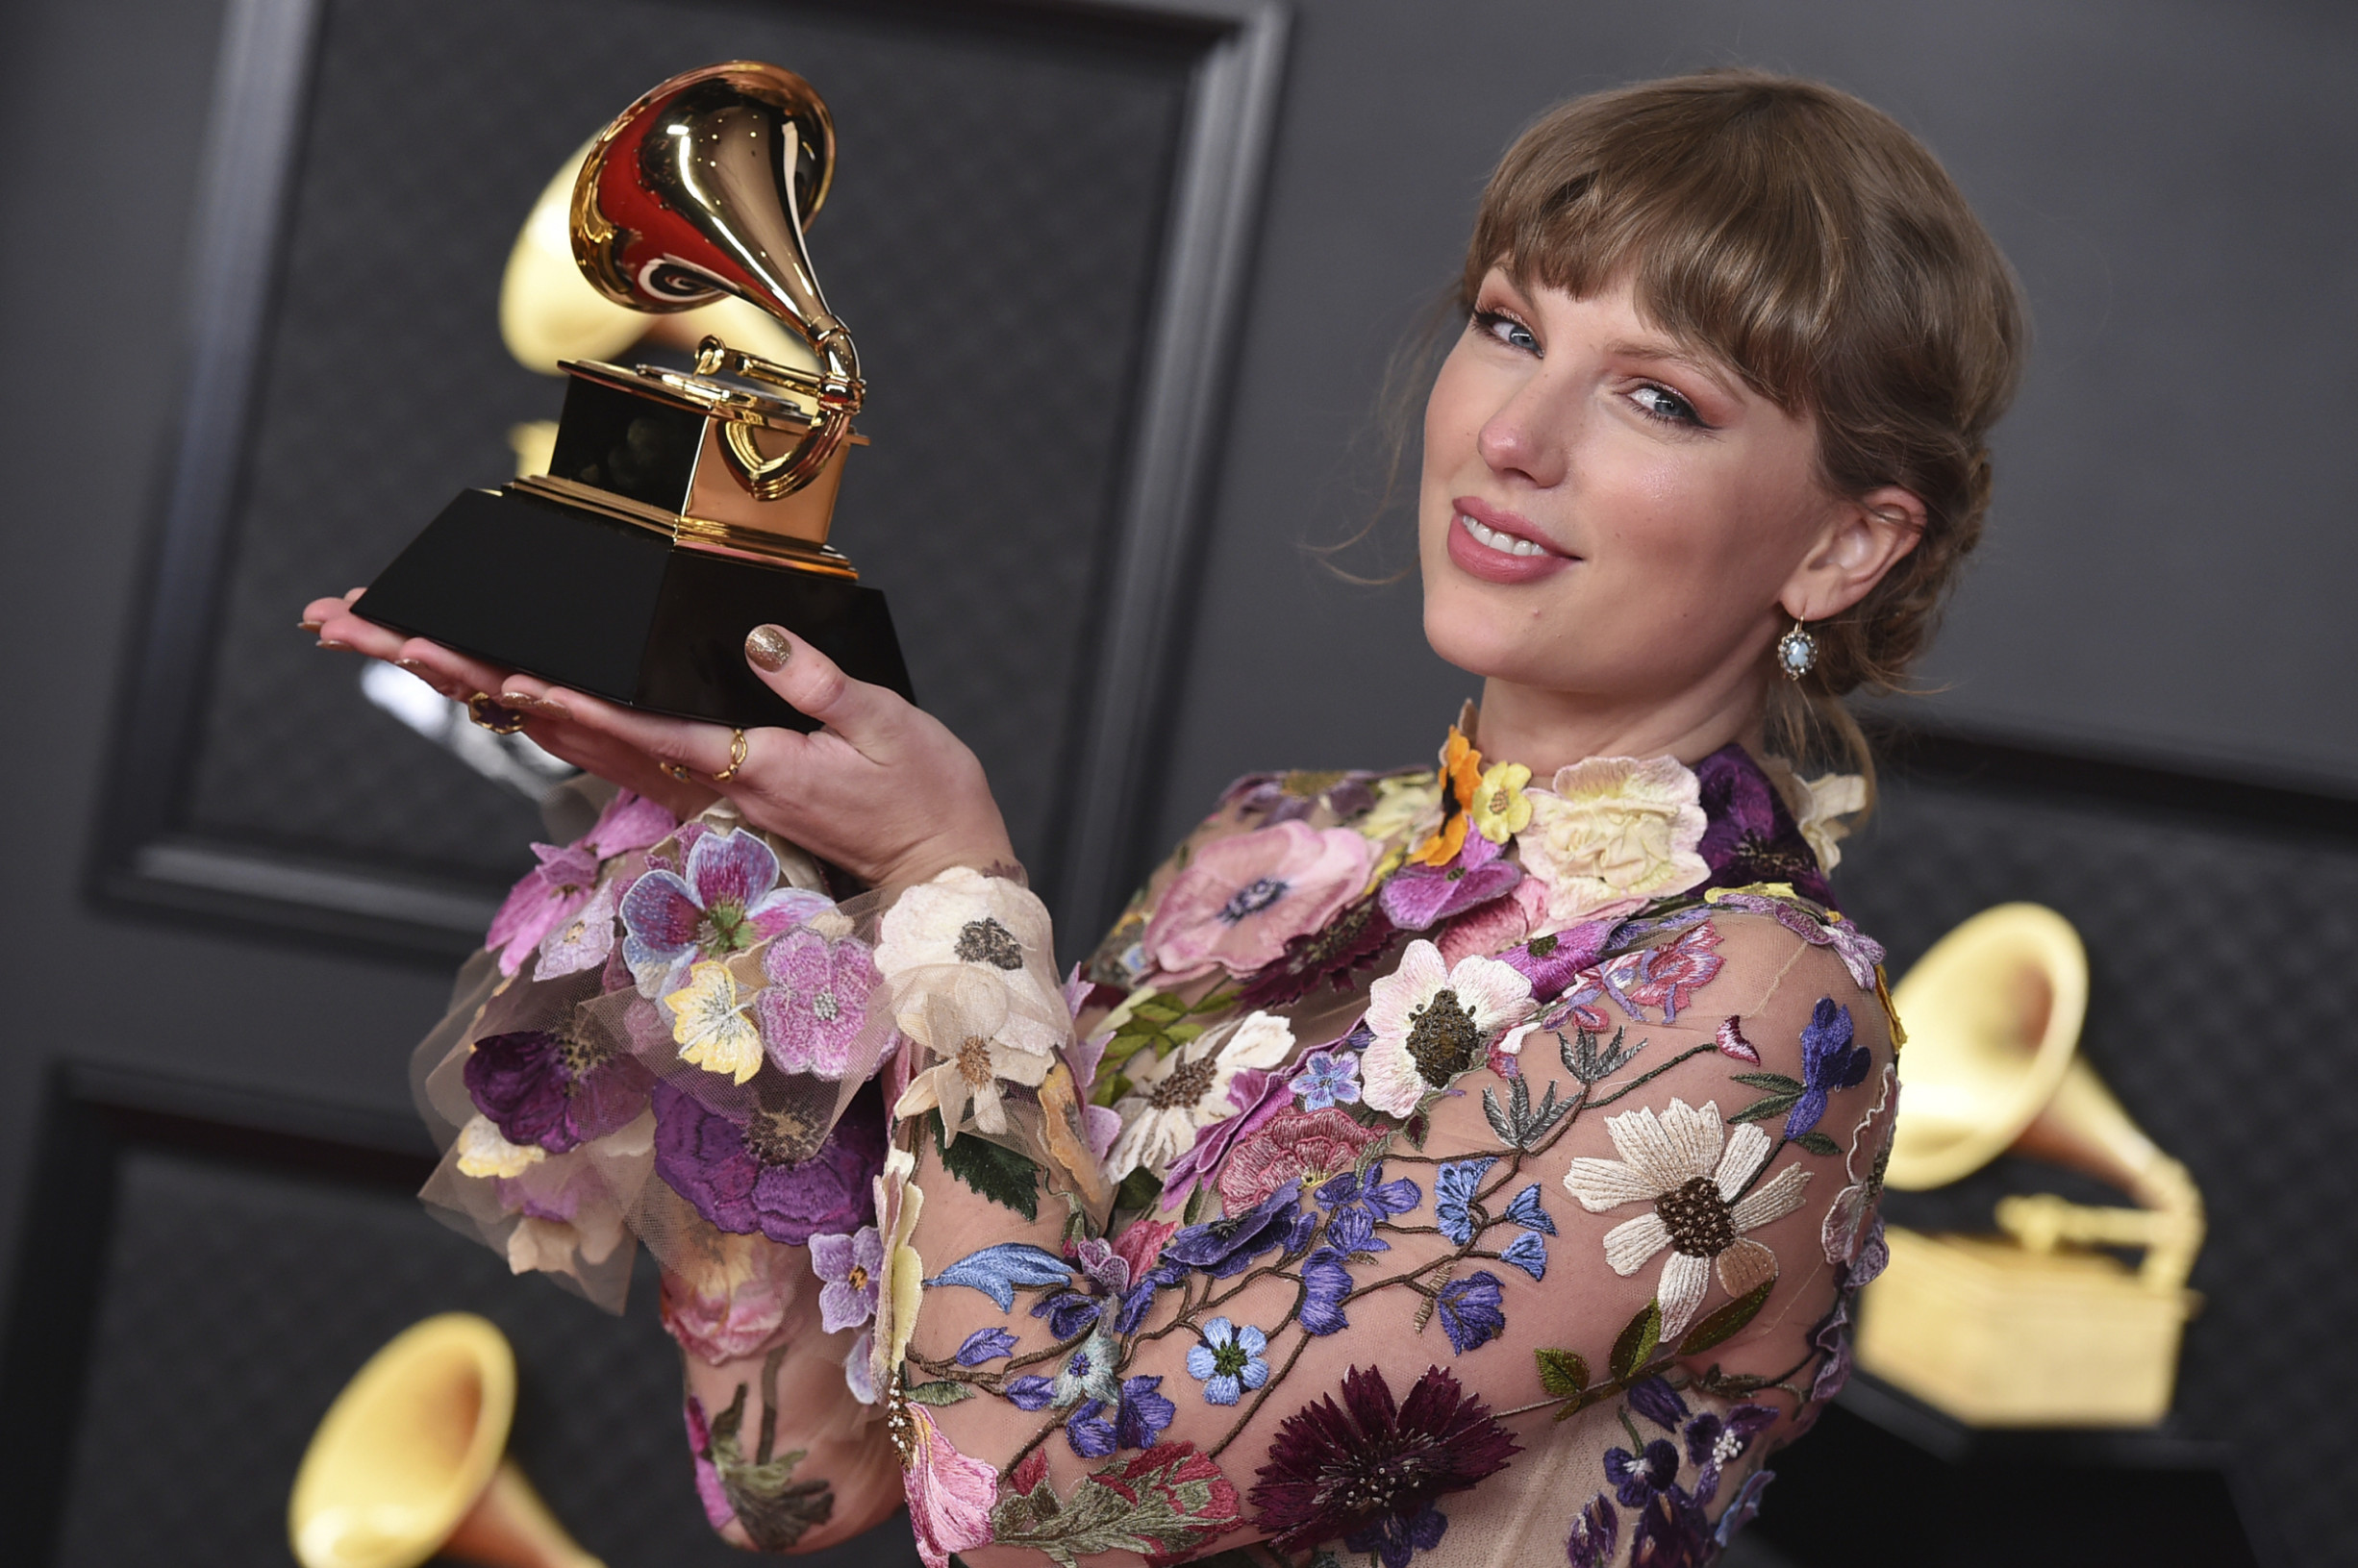 Rekordmanka Taylor Swiftová odkrývá tvář veřejné misogynie. Nejen té mužské